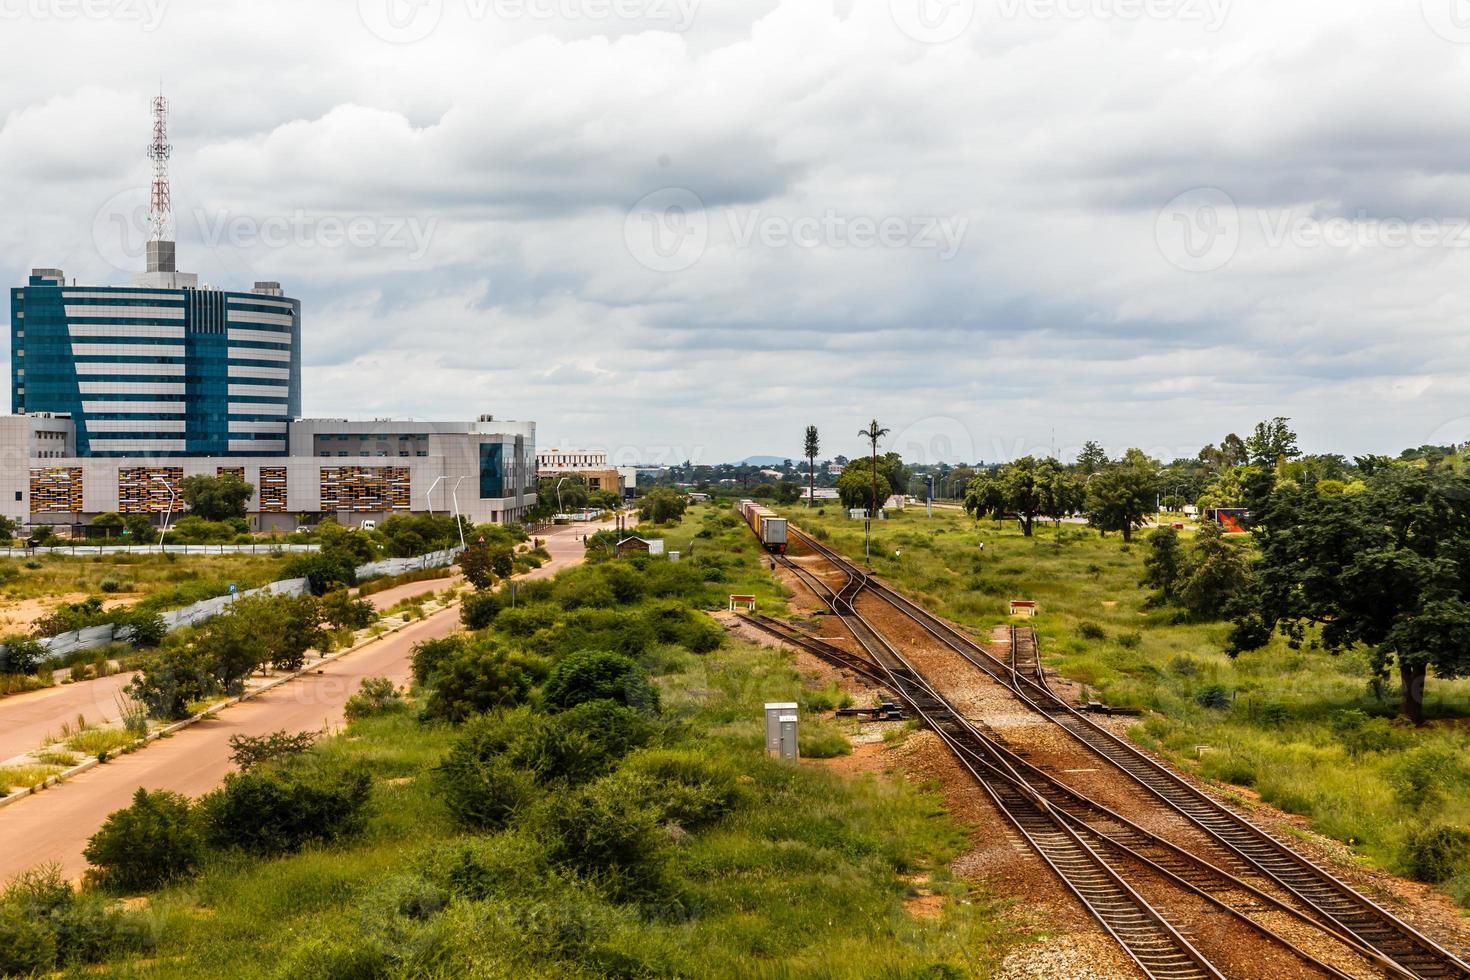 järnväg och snabbt utvecklande central företag distrikt, gaborone, botswana, afrika, 2017 foto